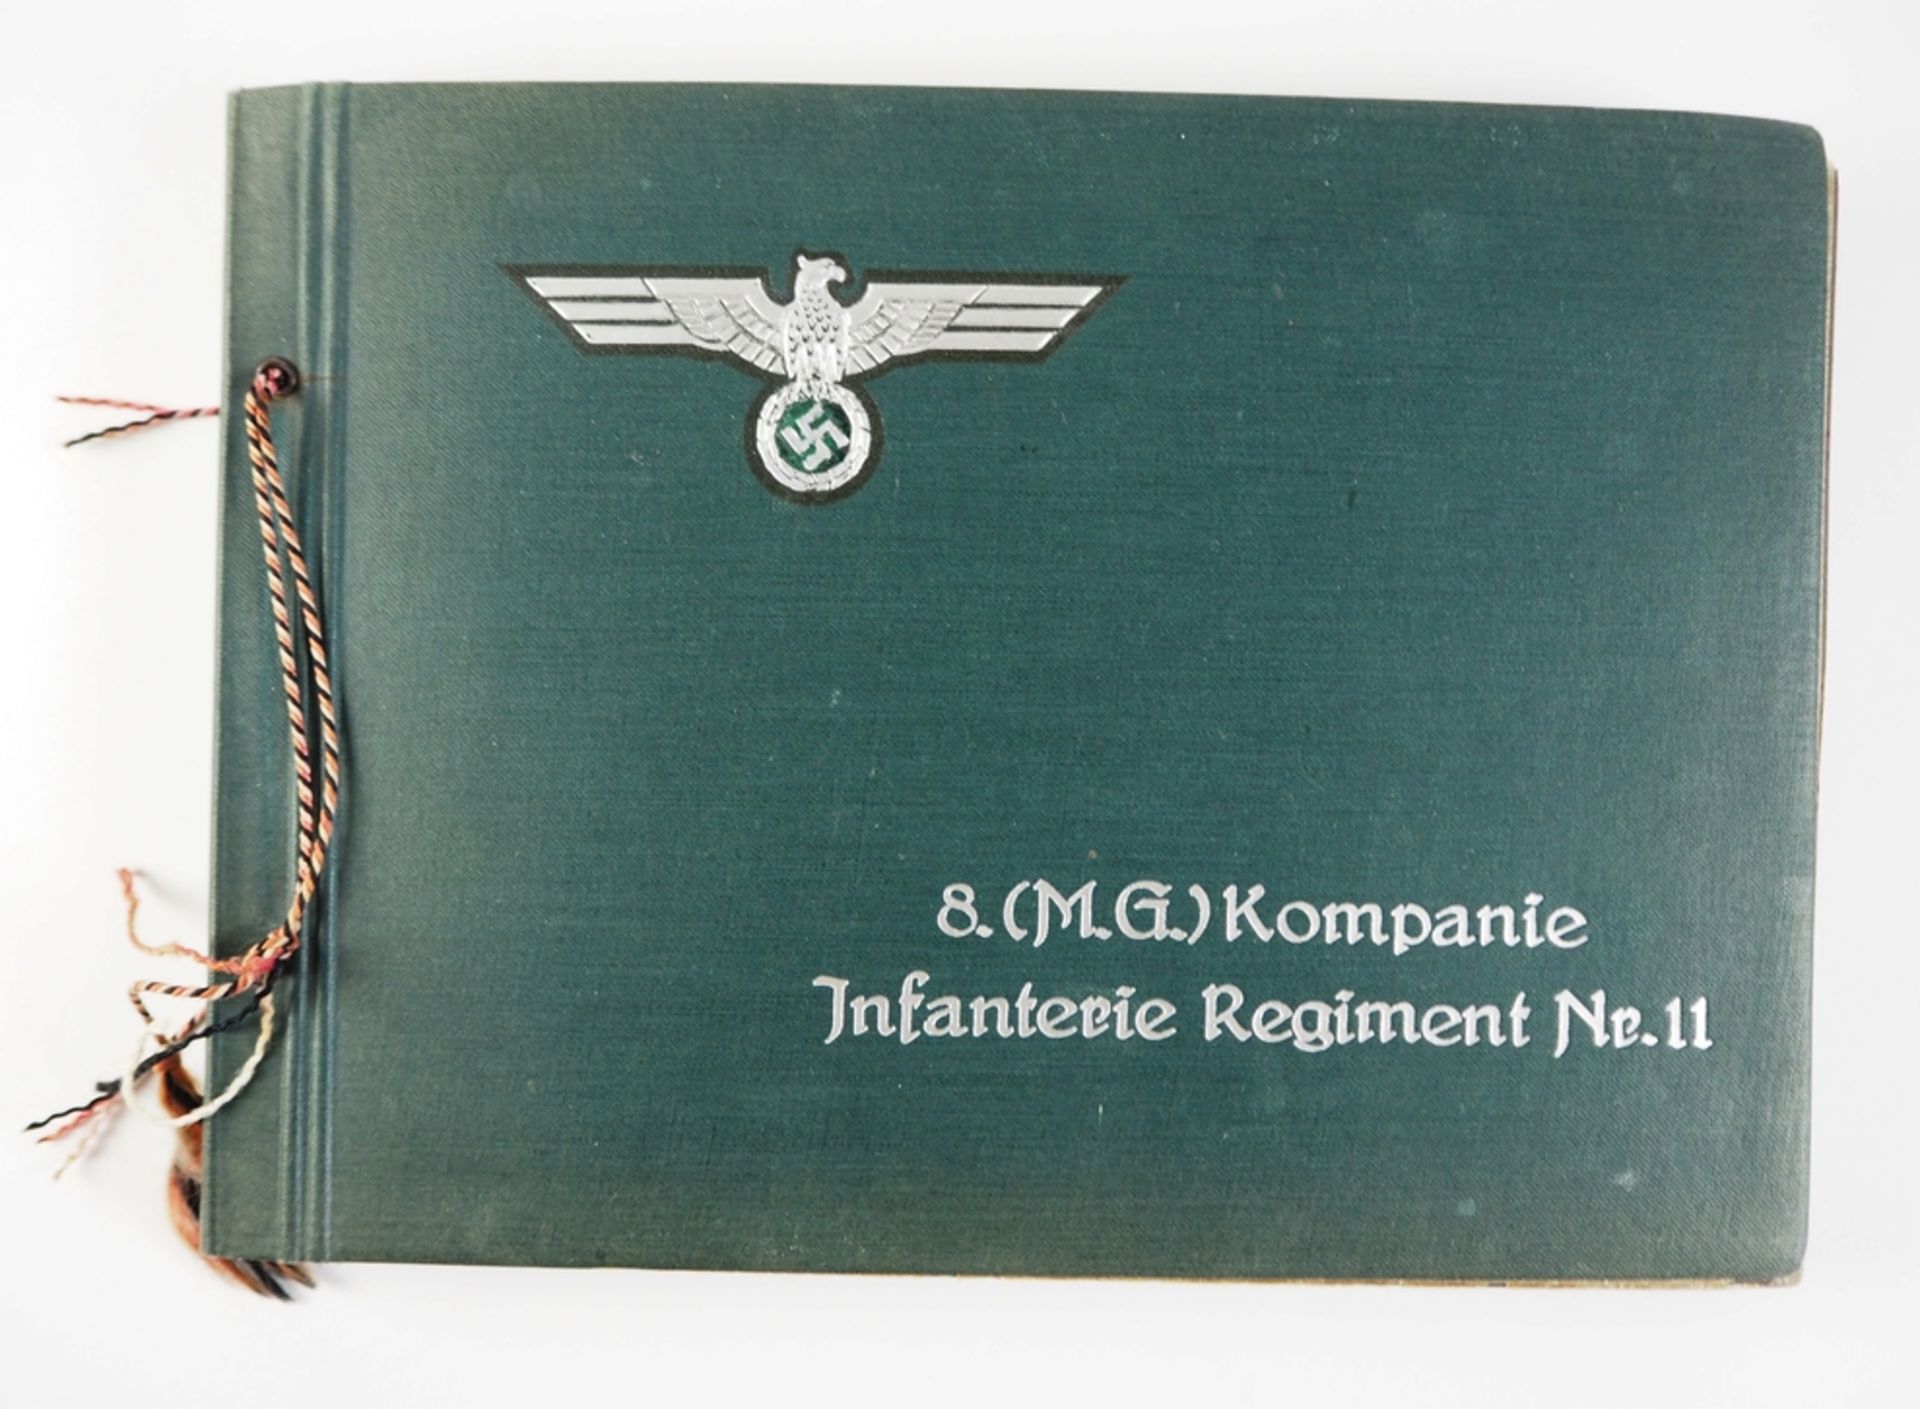 Wehrmacht: Fotoalbum der 8. (M.G.)/ Infanterie-Regiment Nr. 11.